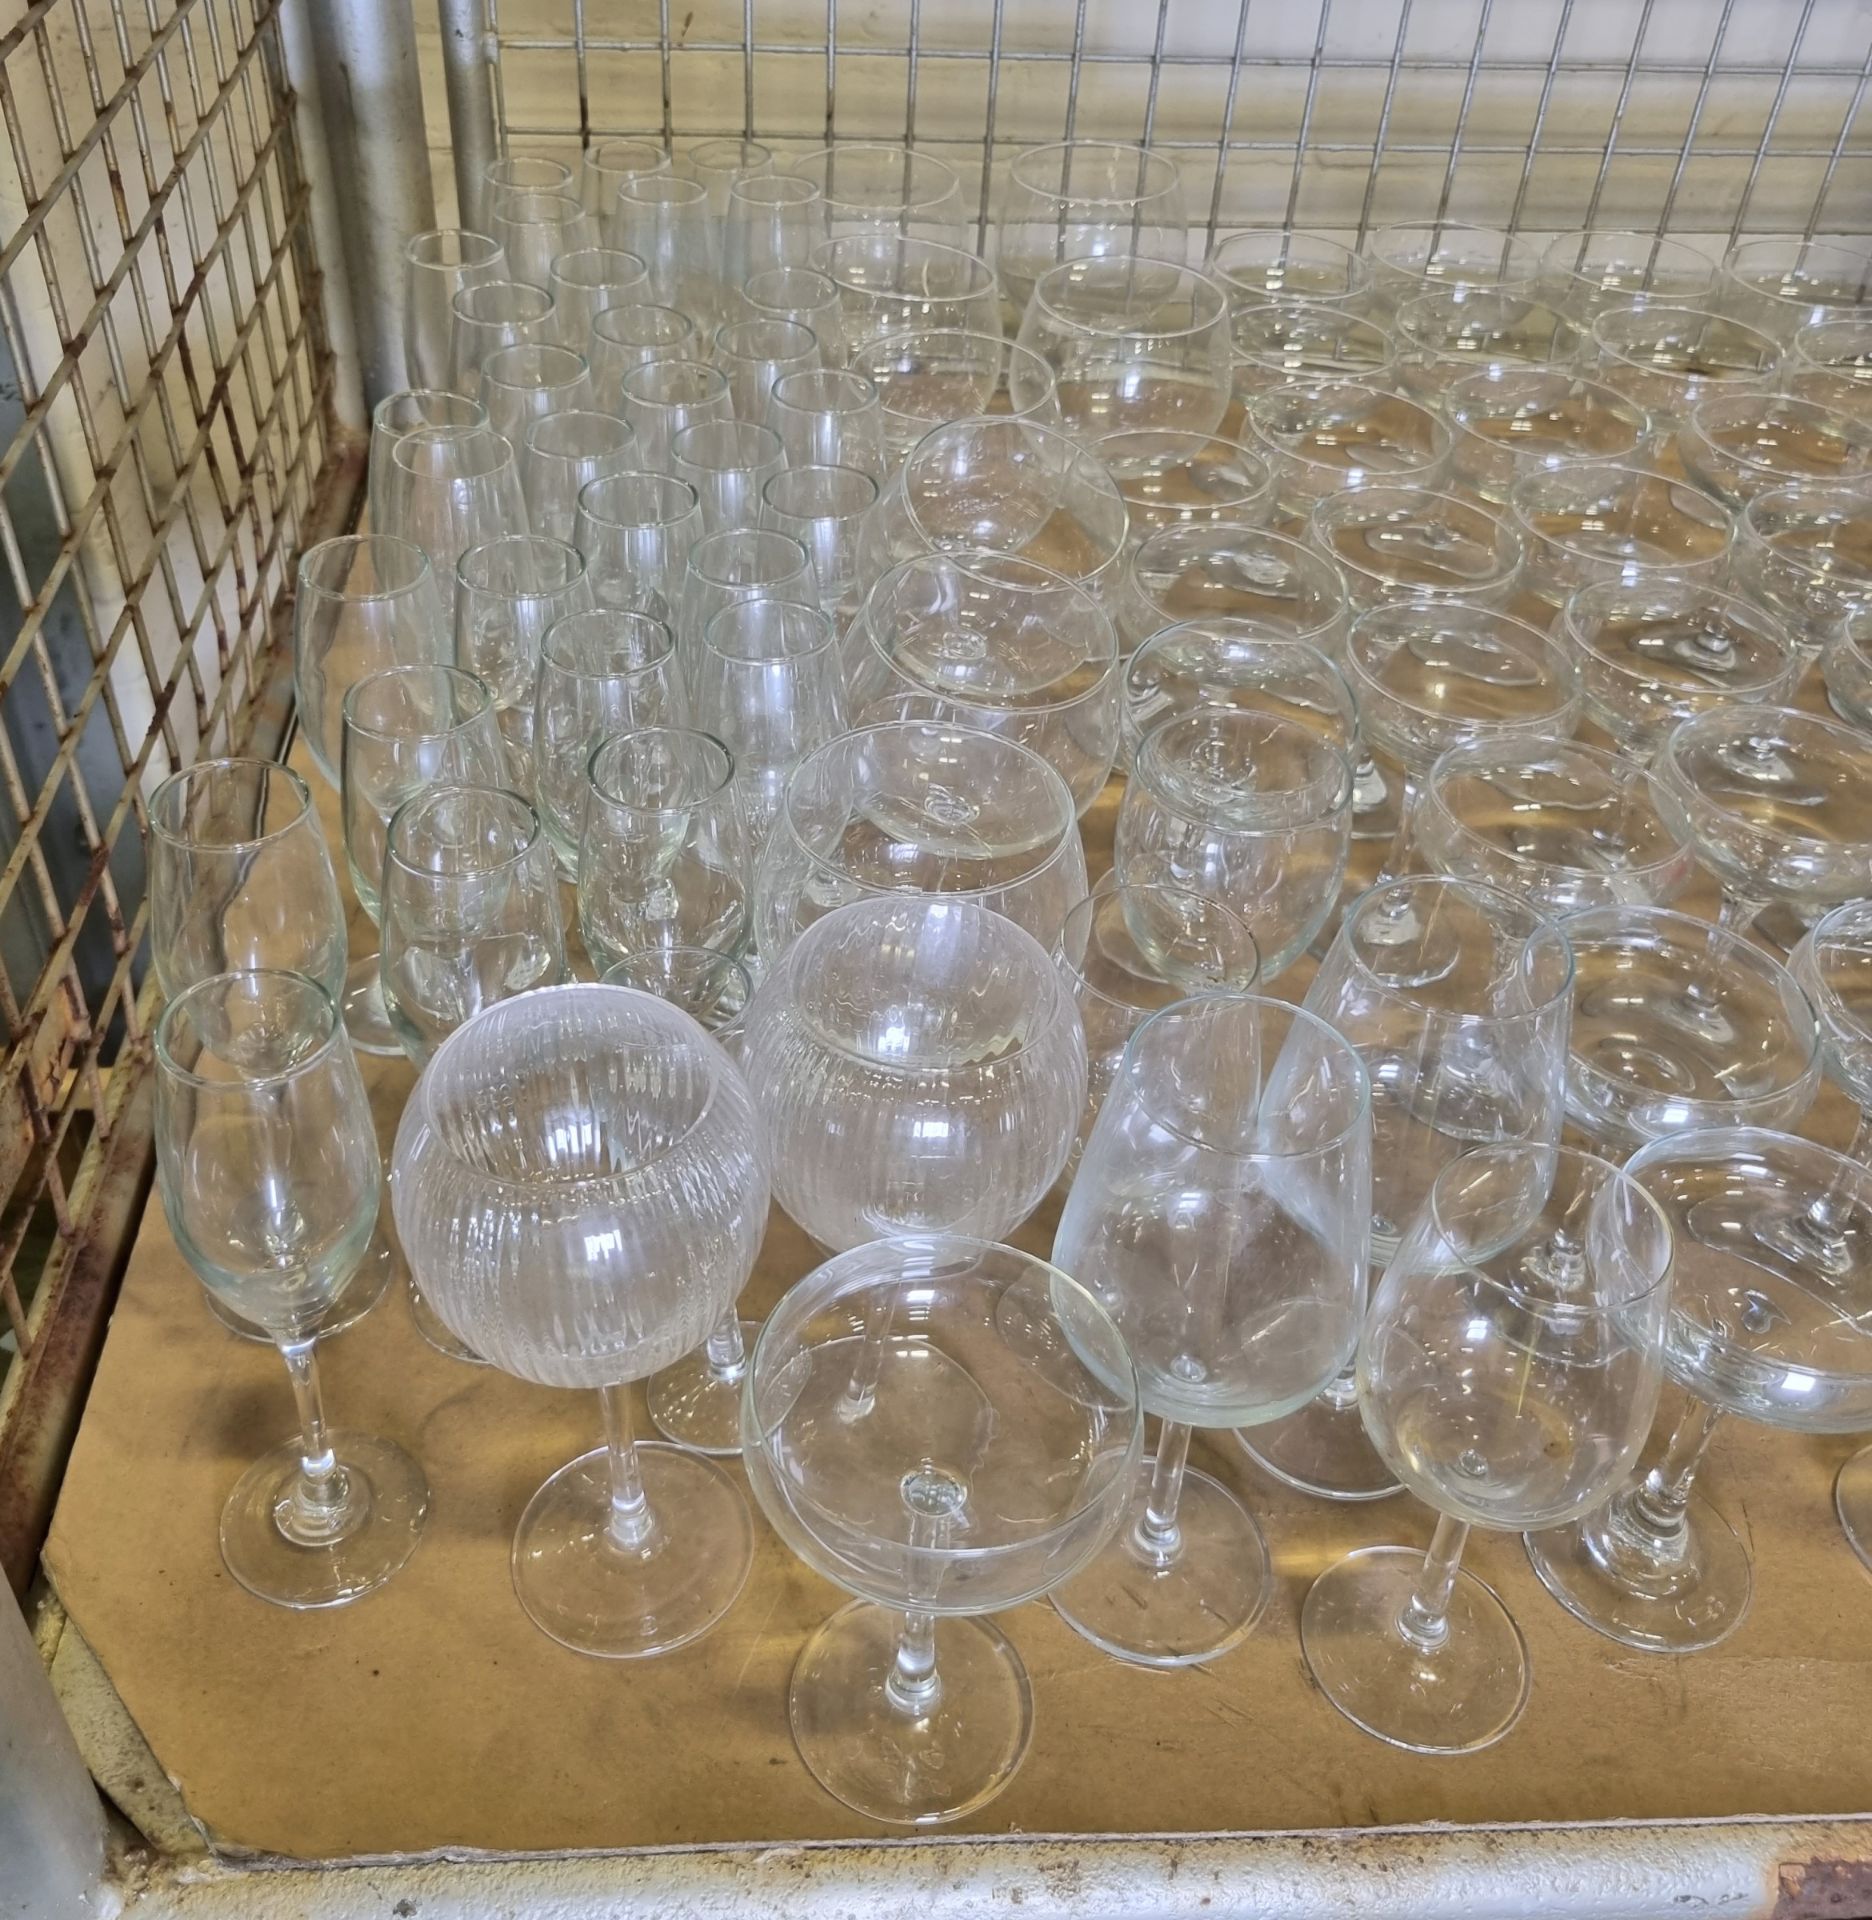 Glassware - martini, wine & flute glasses - Unknown quantity - Image 6 of 6